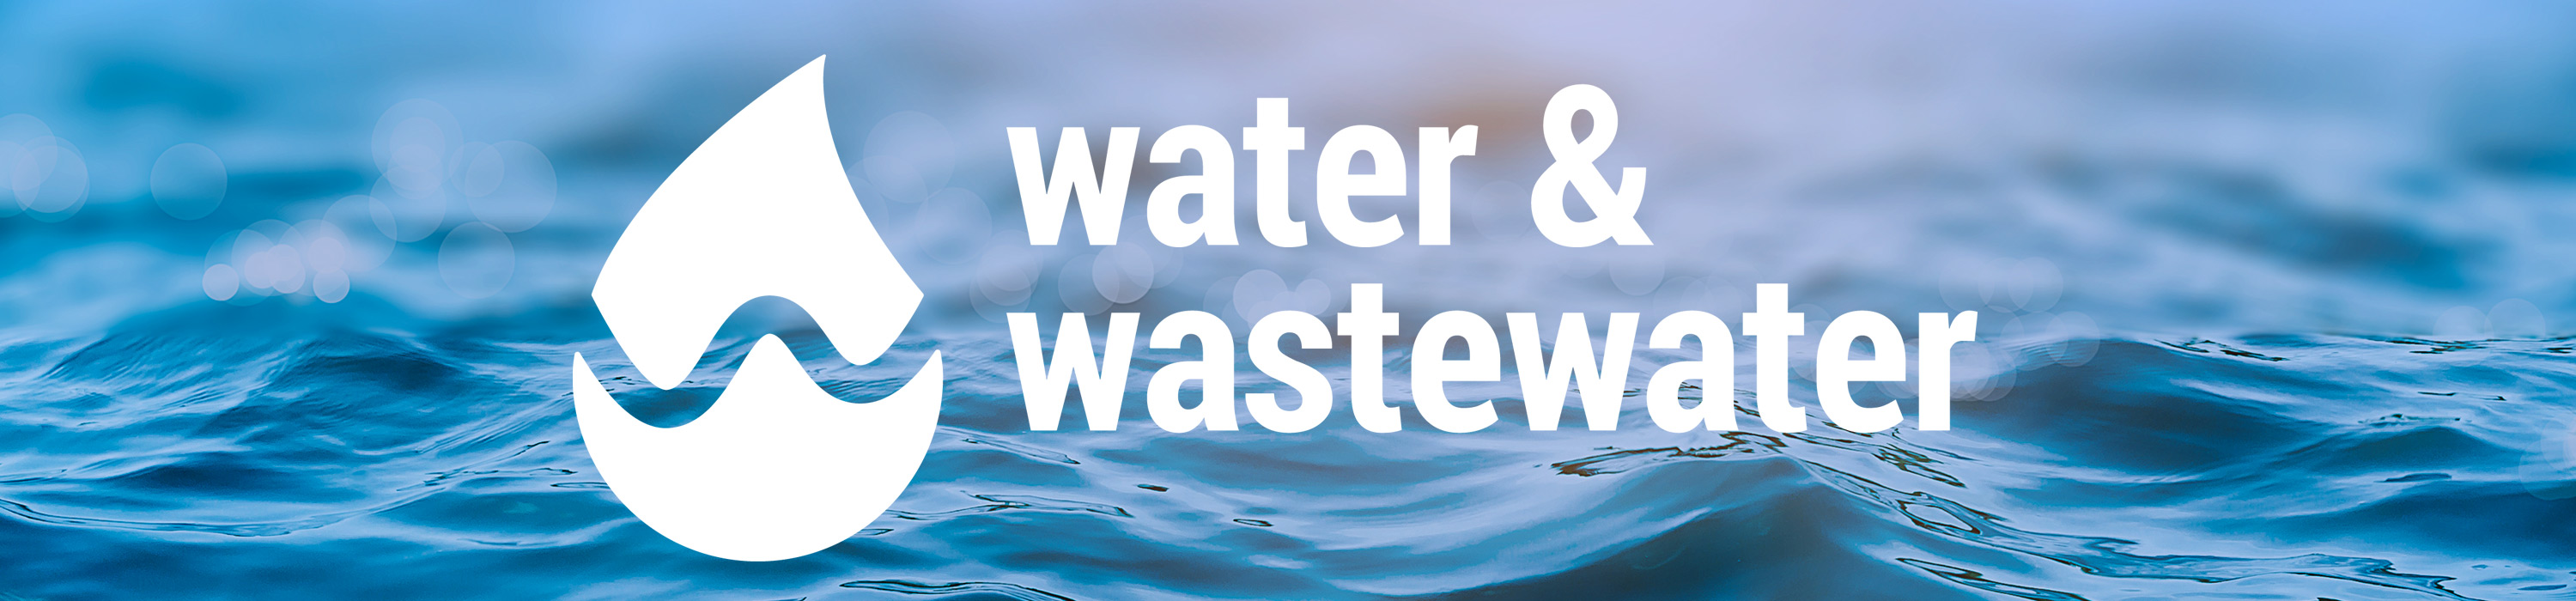 En bild på ett öppet vatten med en illustrerade vattendroppe och texten Water & Wastewater.